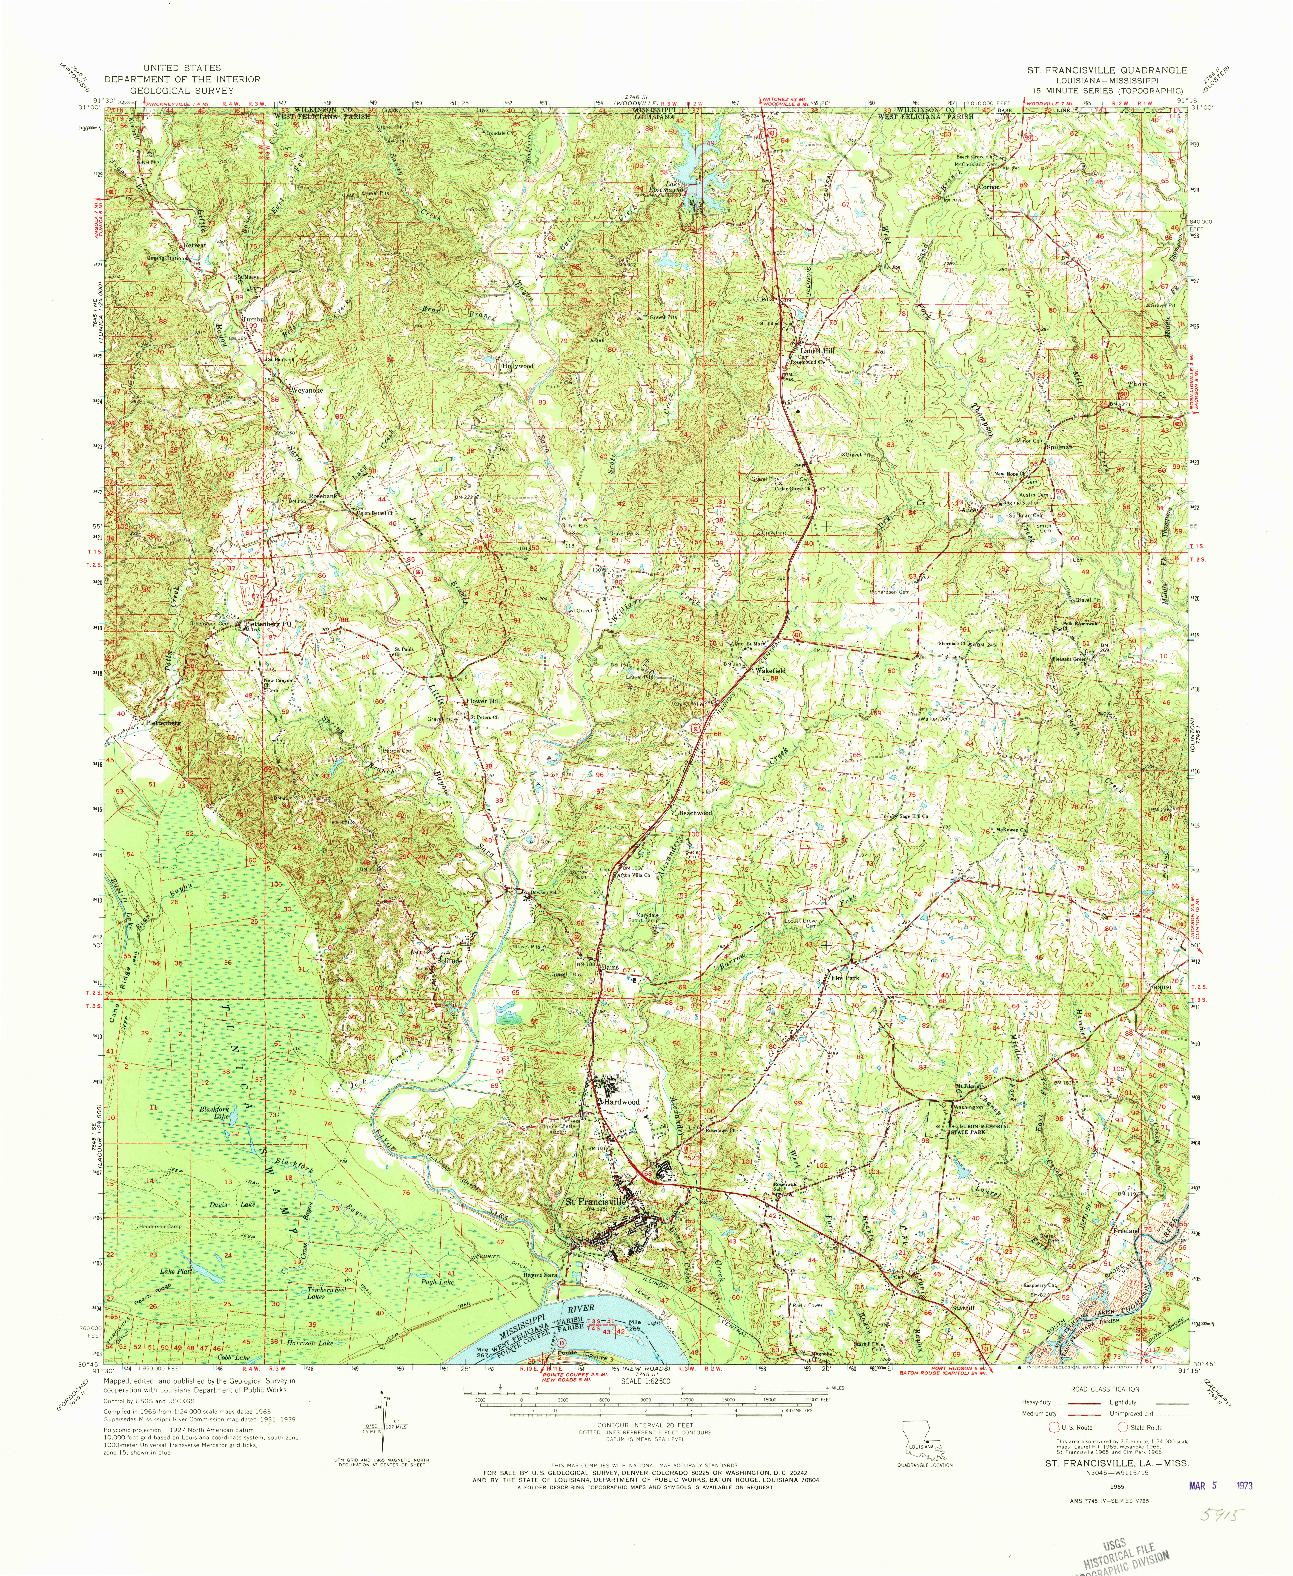 USGS 1:62500-SCALE QUADRANGLE FOR ST. FRANCISVILLE, LA 1965